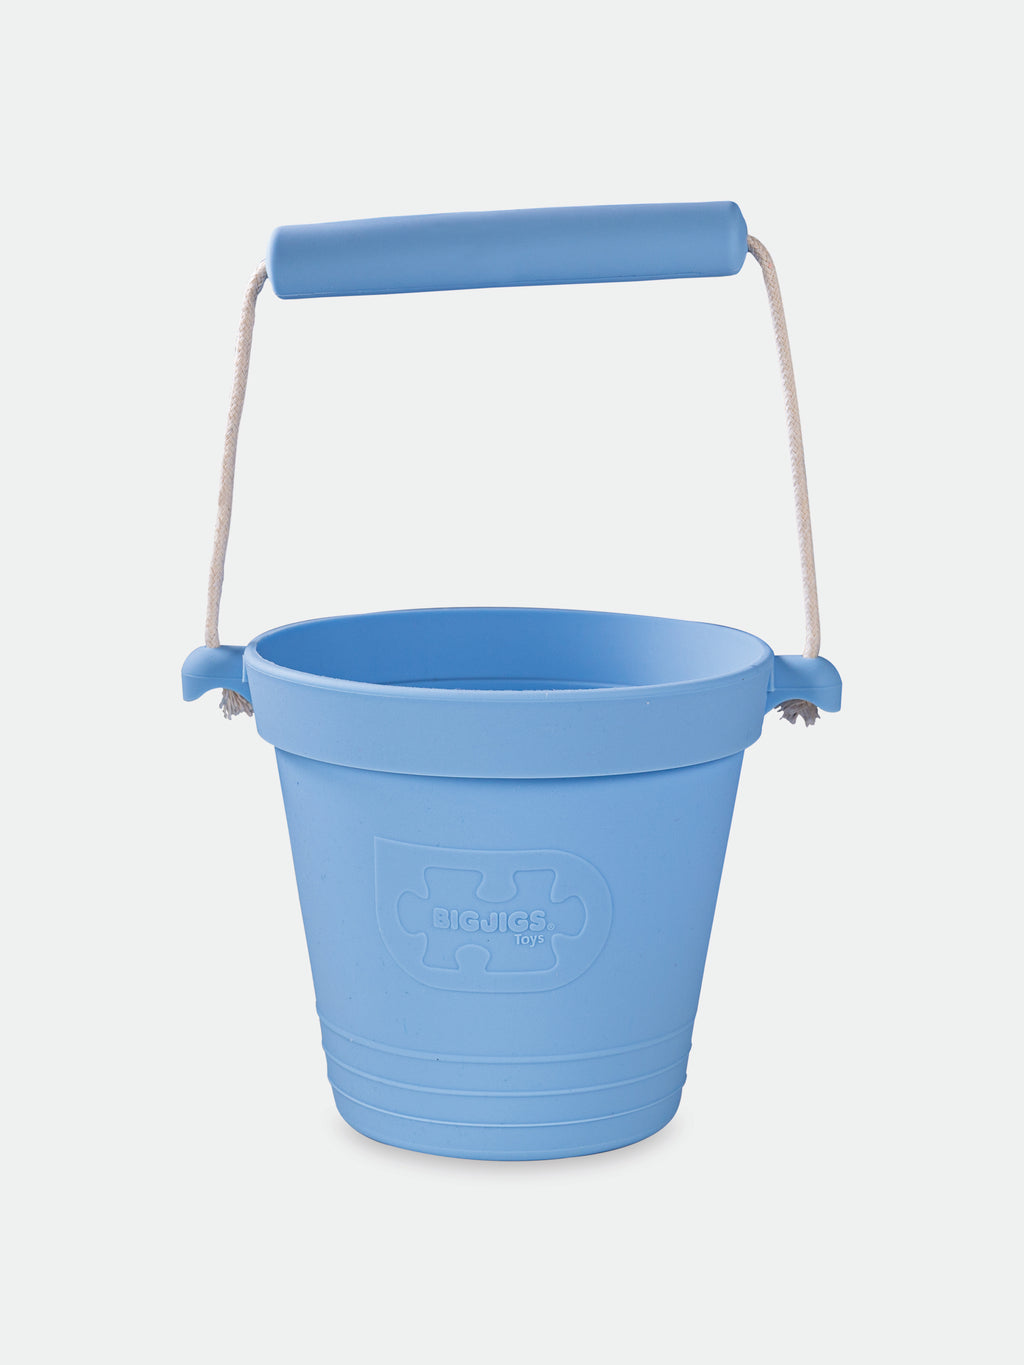 Light blue bucket for kids